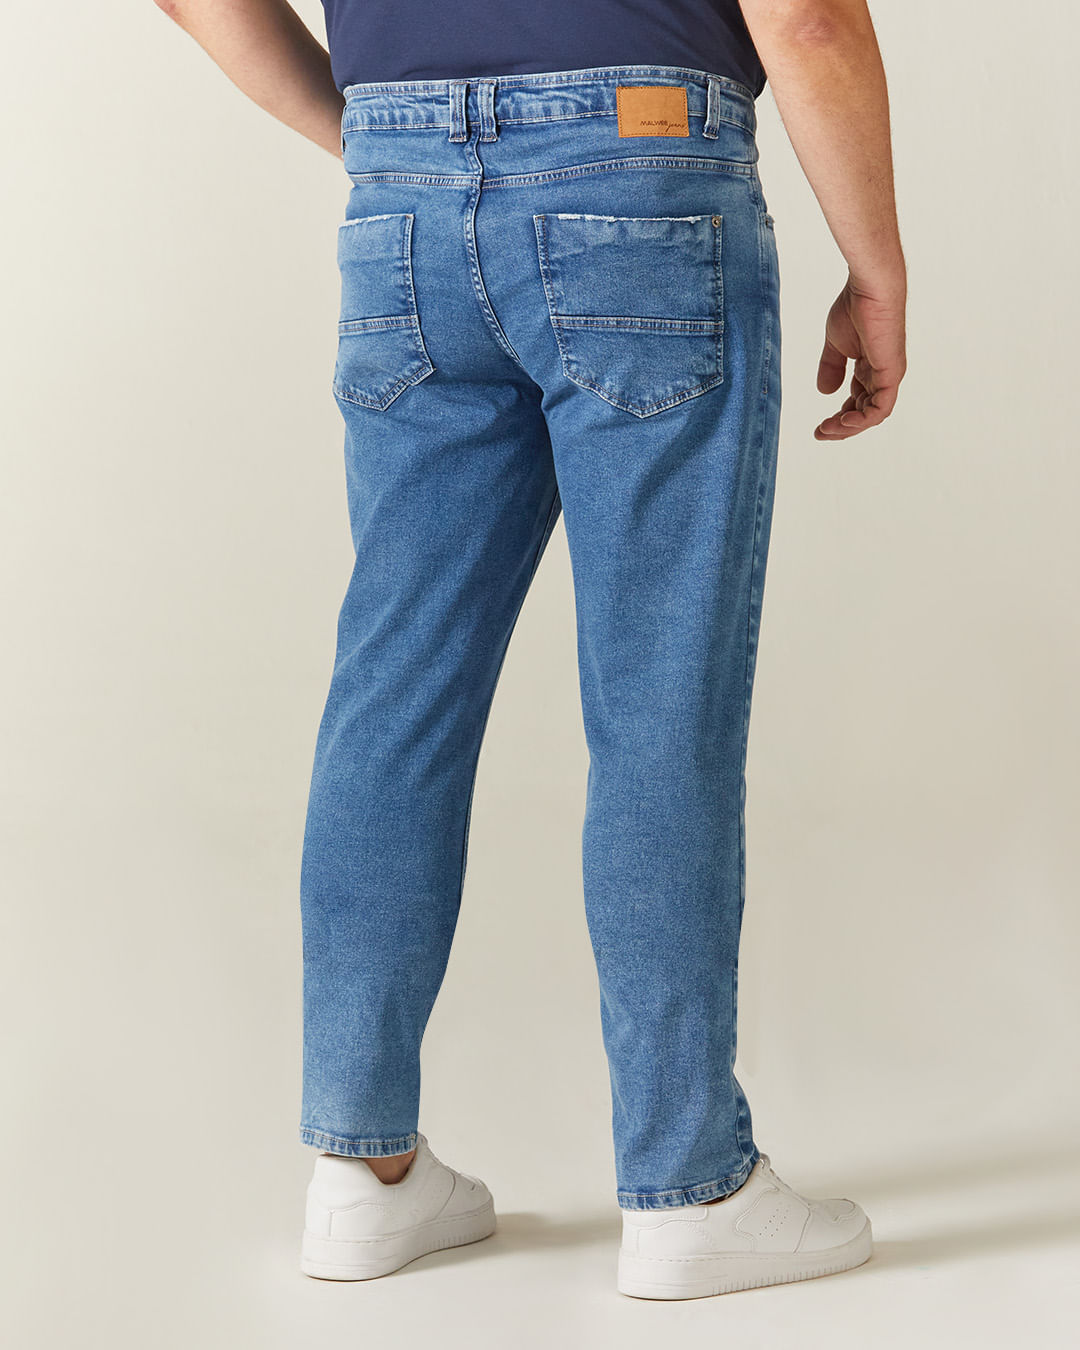 Mens Jeans YOUNGLA Mens Moda Calças INS Moda Plus Size Secagem